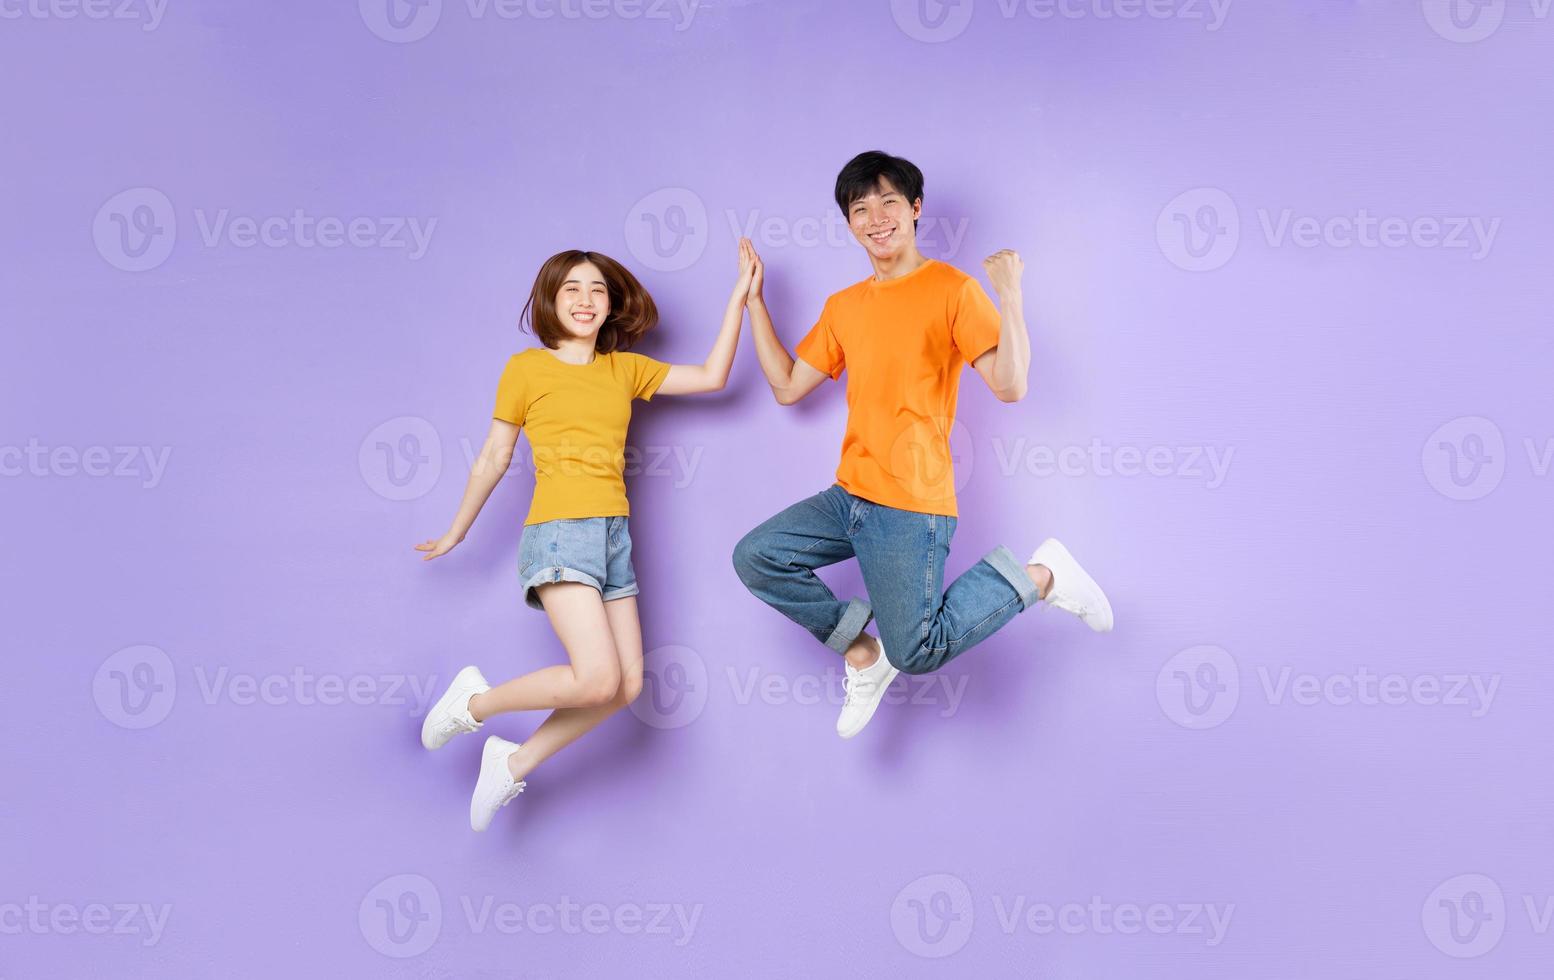 porträtt av ett par som hoppar upp, isolerat på lila bakgrund foto